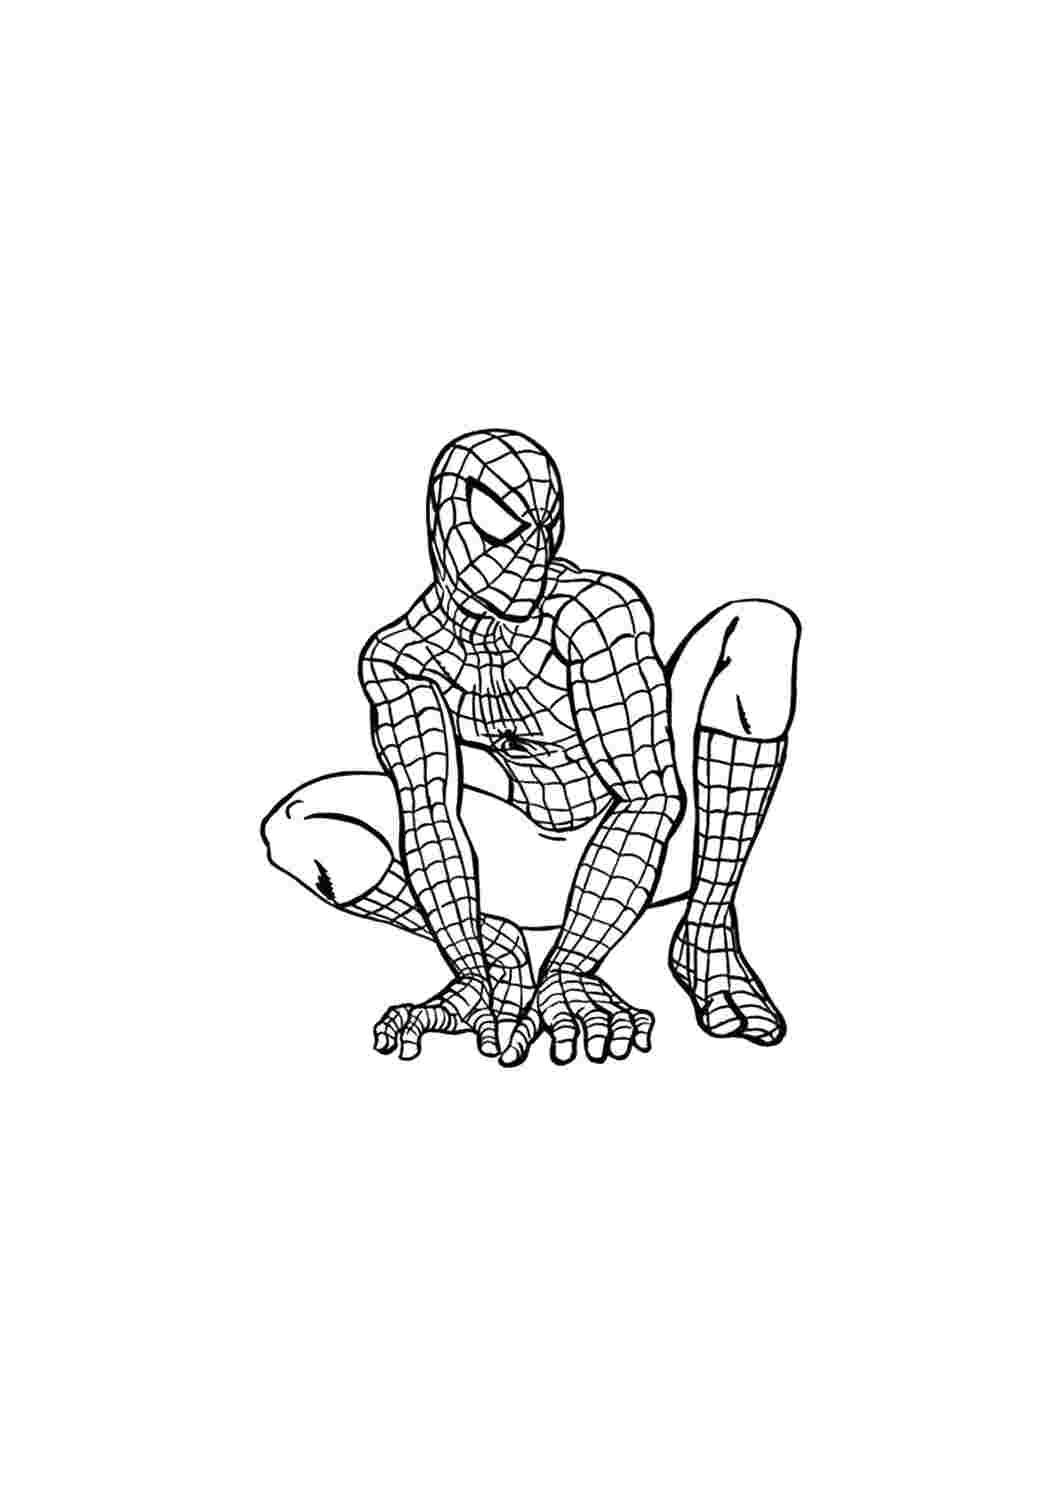 Раскраски человек-паук распечатать бесплатно | Spider man